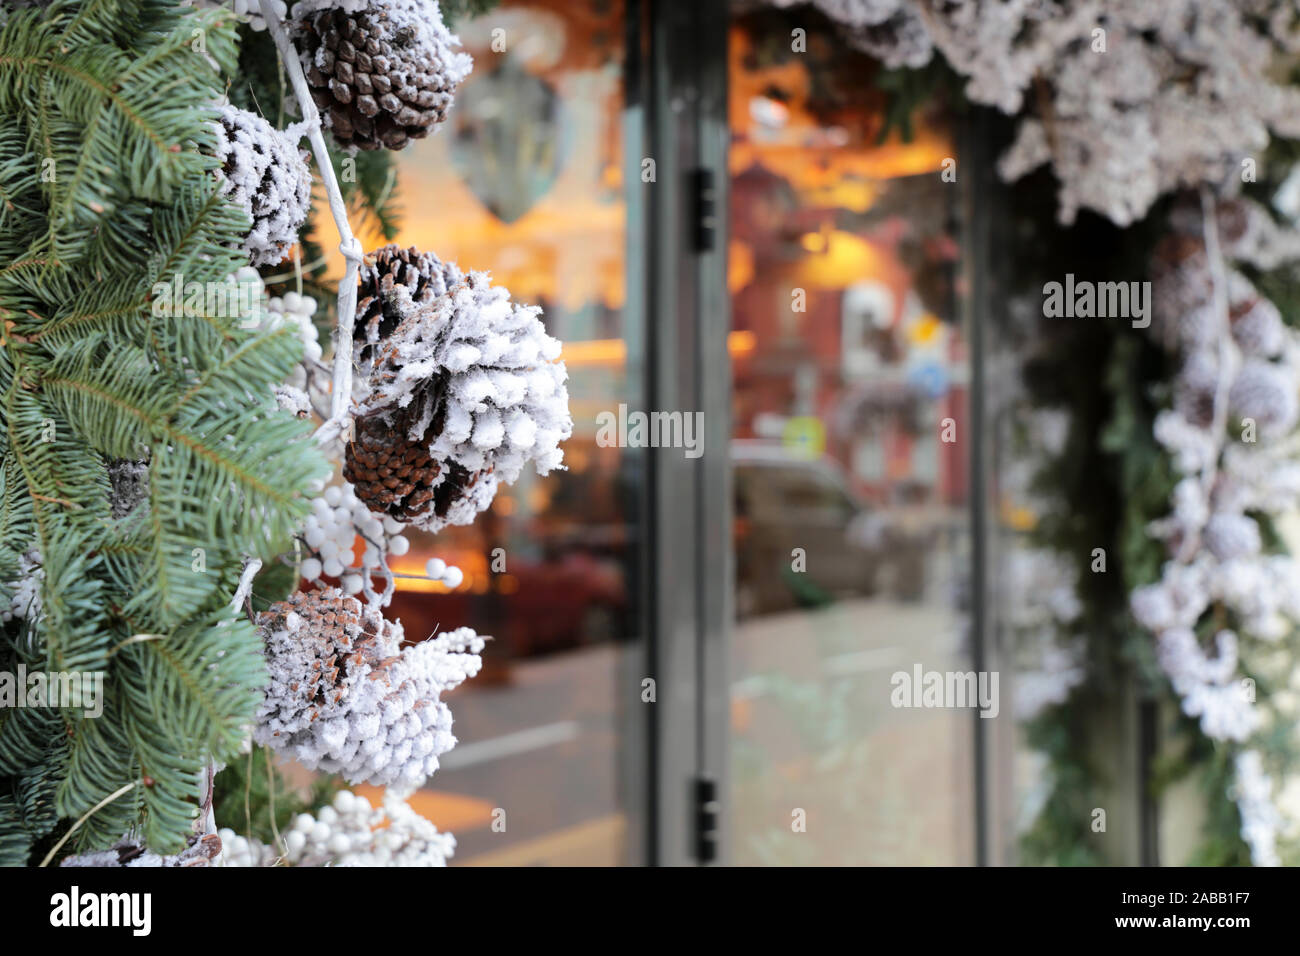 Le decorazioni di Natale in una vetrina su una strada della citta'. Rami di abete e pino coni in inverno, nuovo anno celebrazione, la magia della vacanza Foto Stock